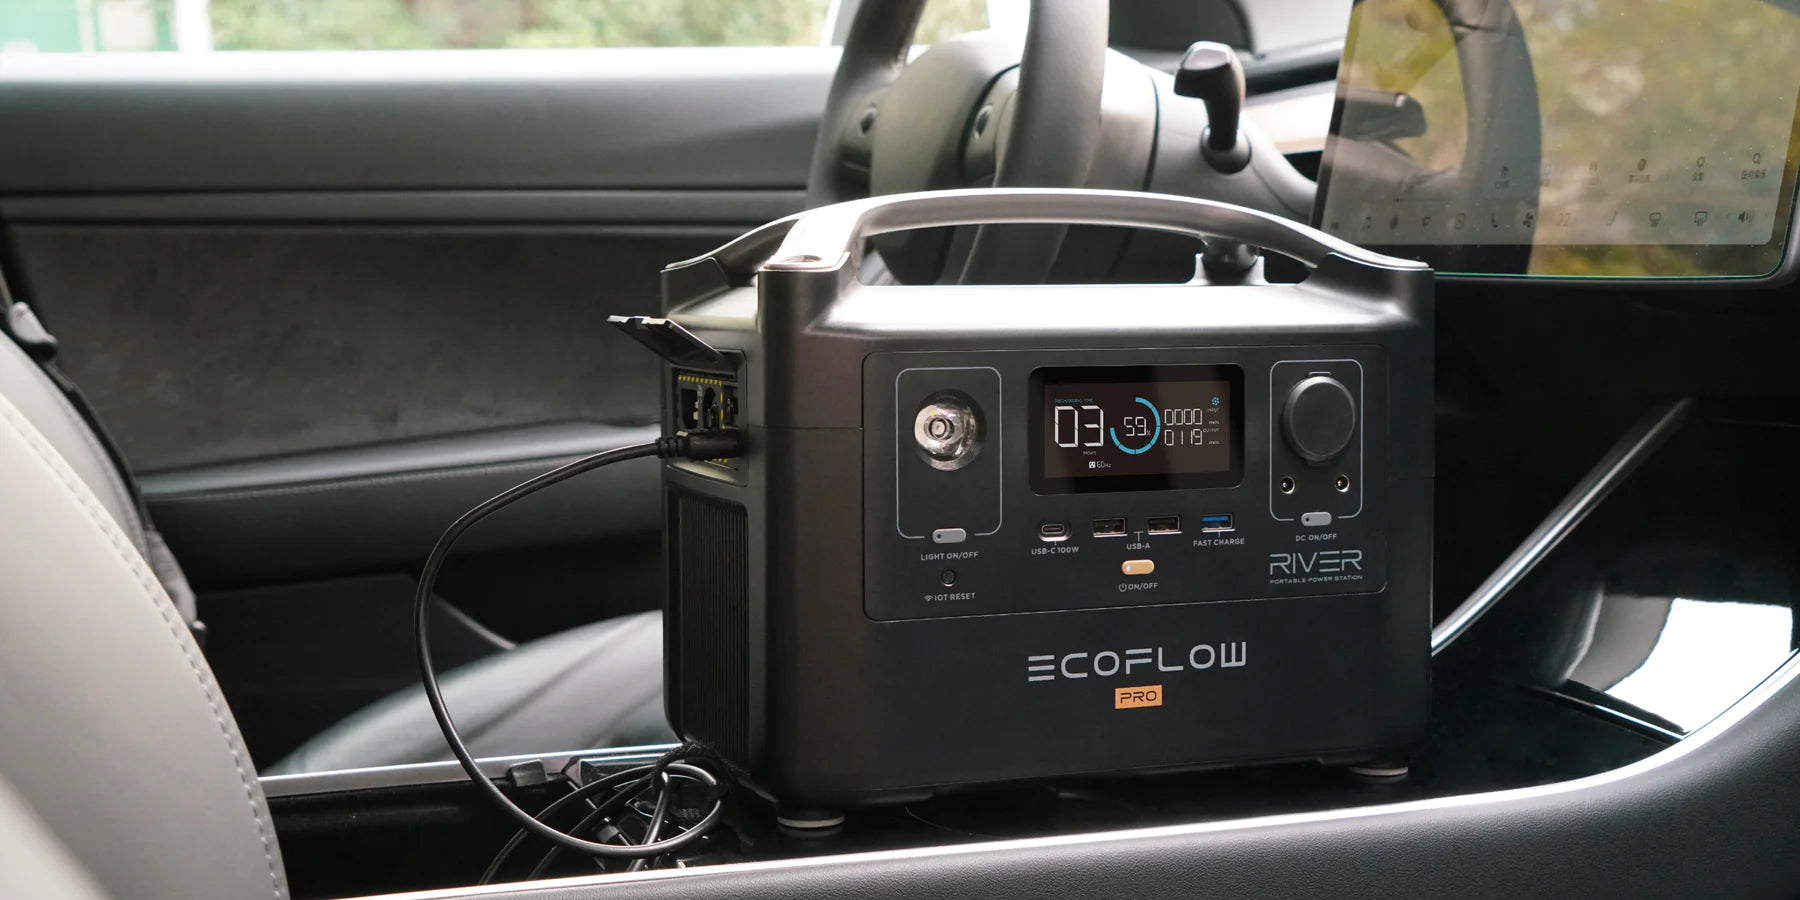 EcoFlow RIVER Pro Portable Power Station Convenient Car Charging